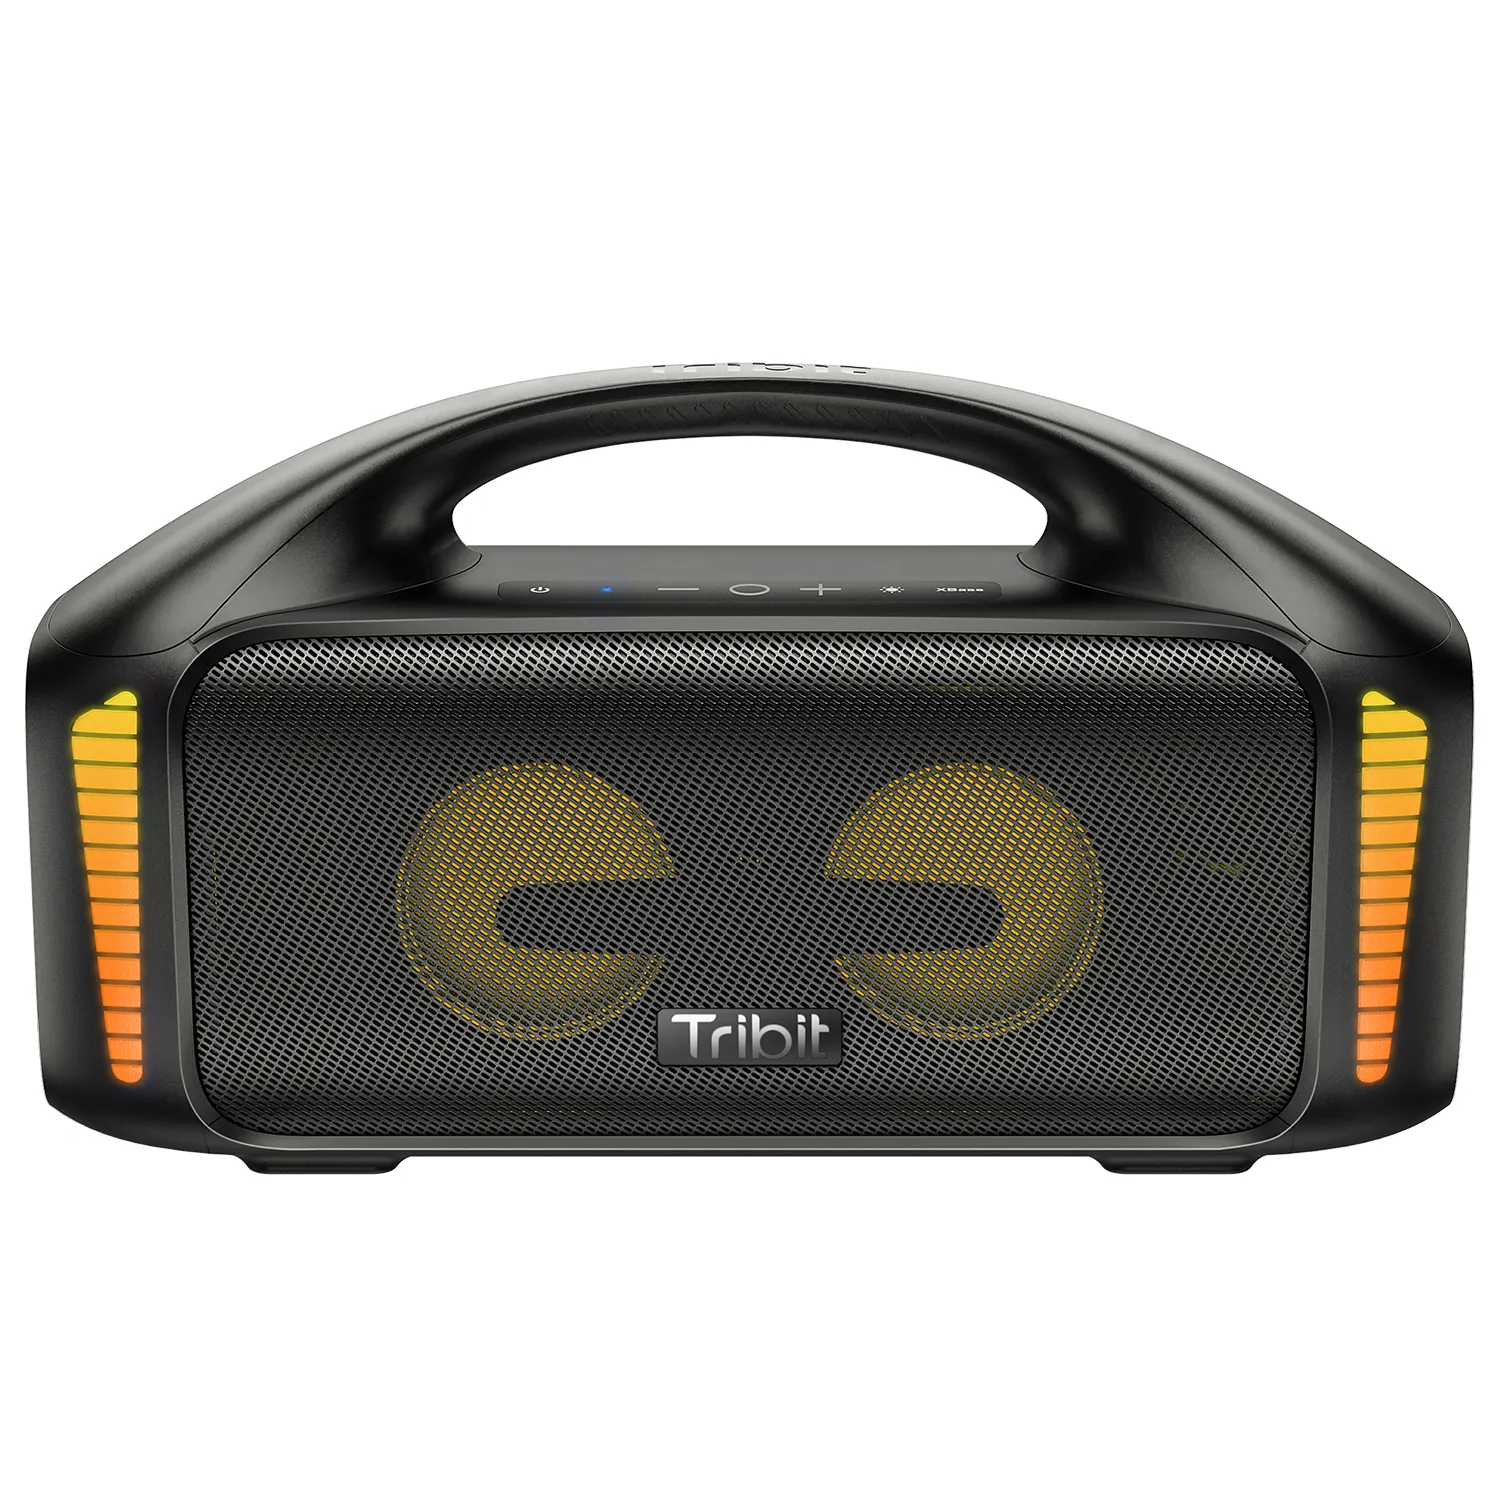 Tribit 본래 옥외 스피커, StormBox 돌풍, 야외를 위한 90W 무선 휴대용 스피커.